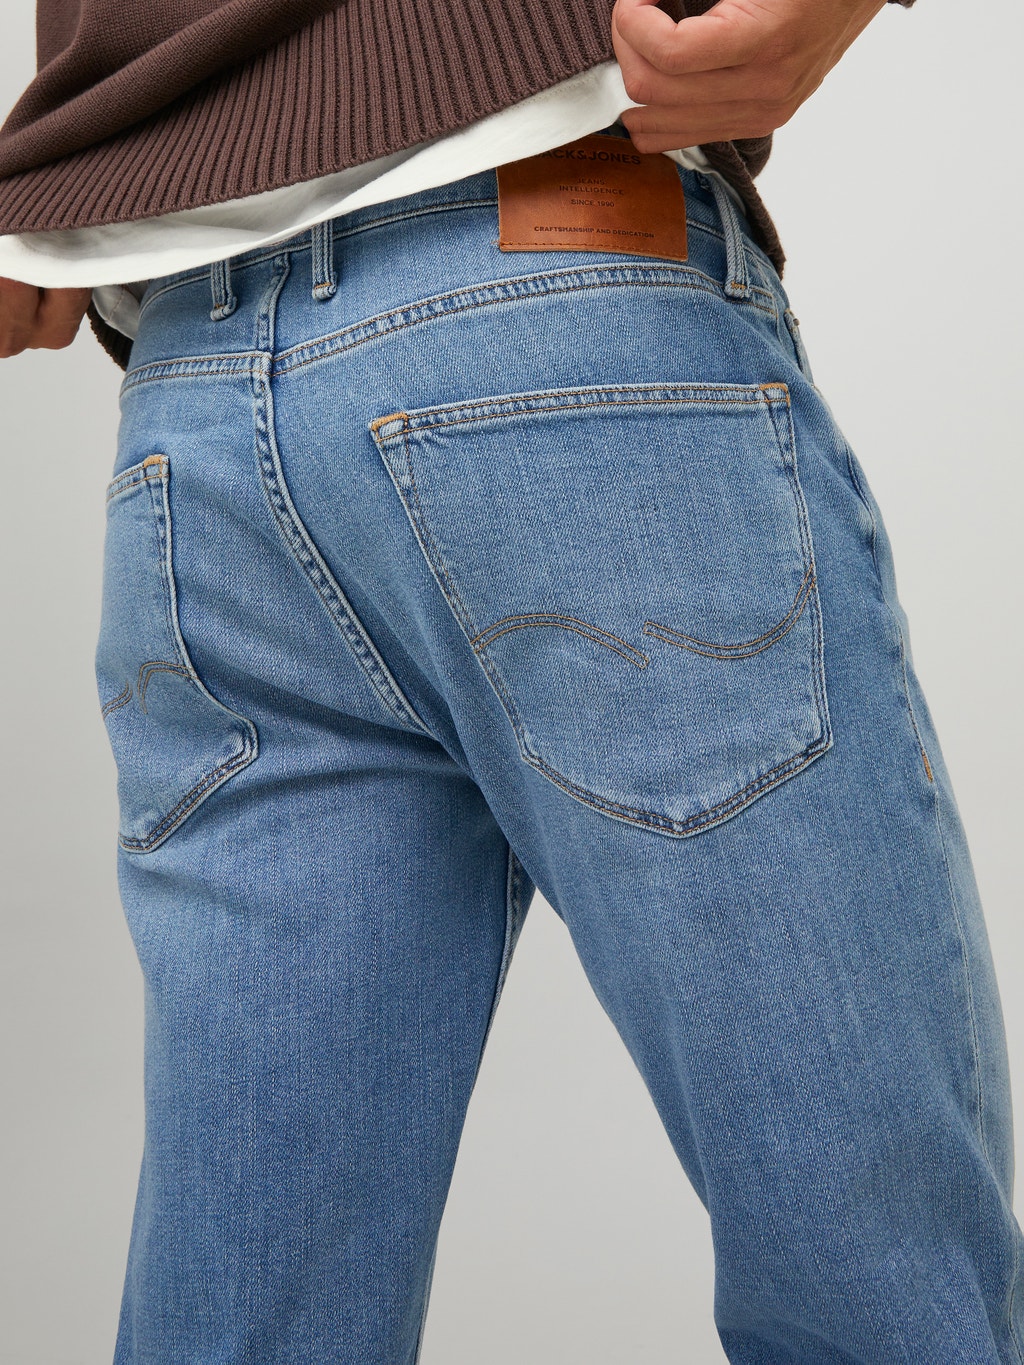 Clark Evan CJ 331 Regular fit jeans with 30% discount! | Jack & Jones®